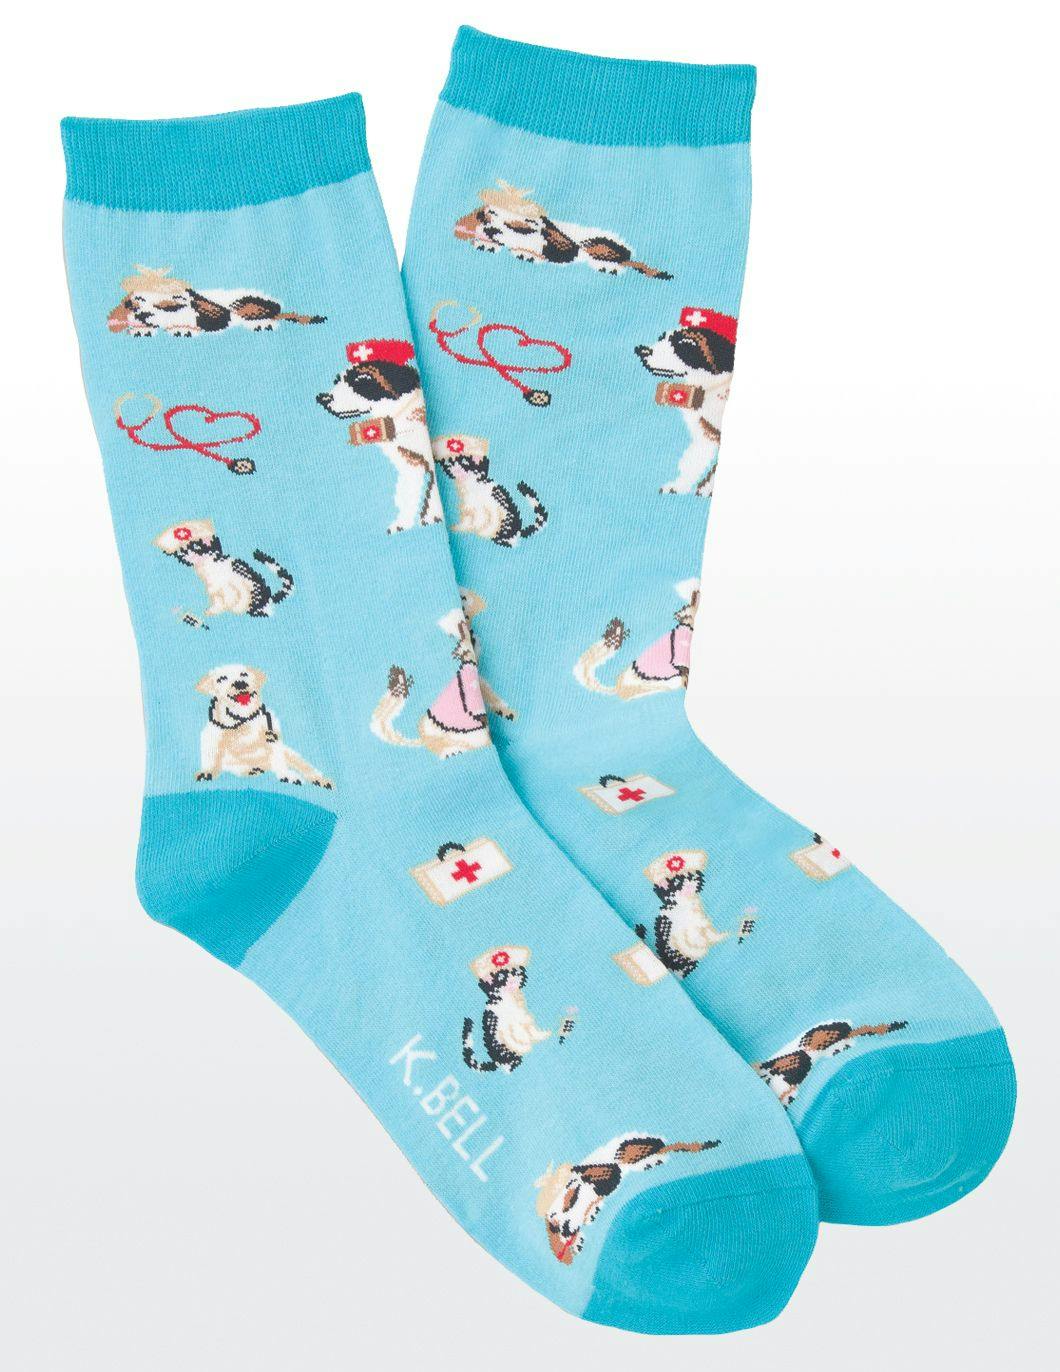 kbell-womens-veterinarian-blue-print-socks